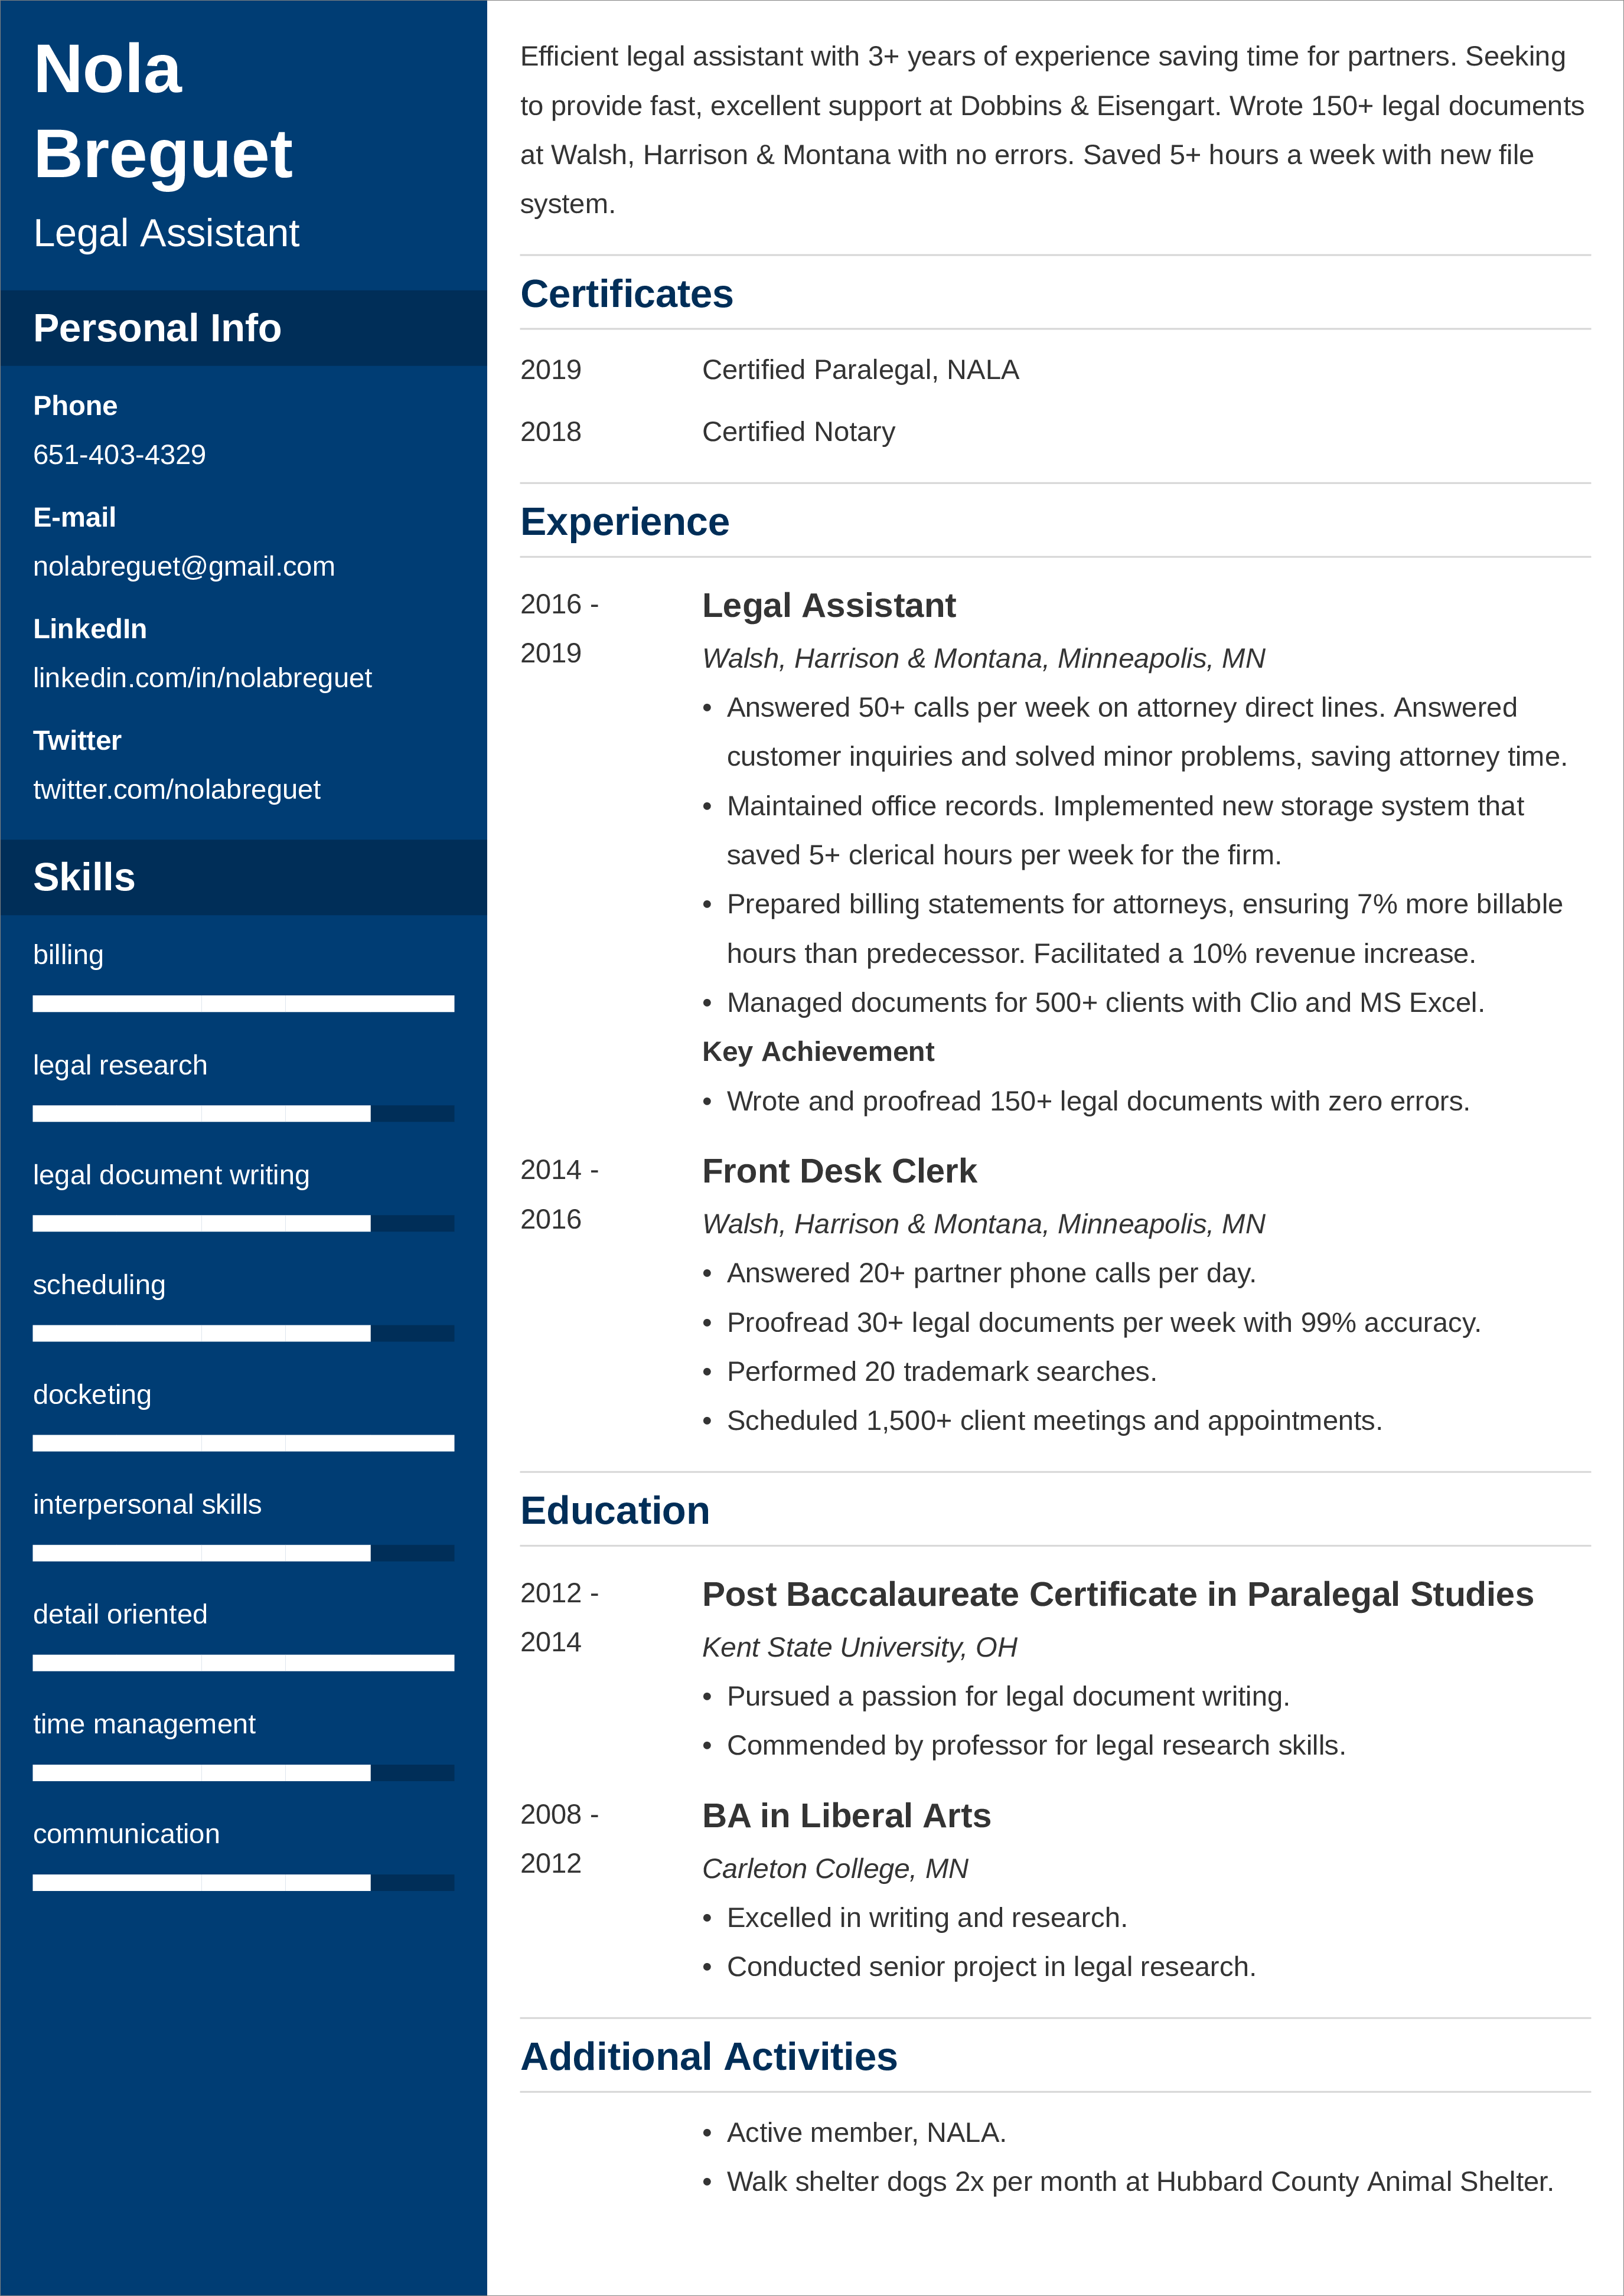 legal assistant CV templates